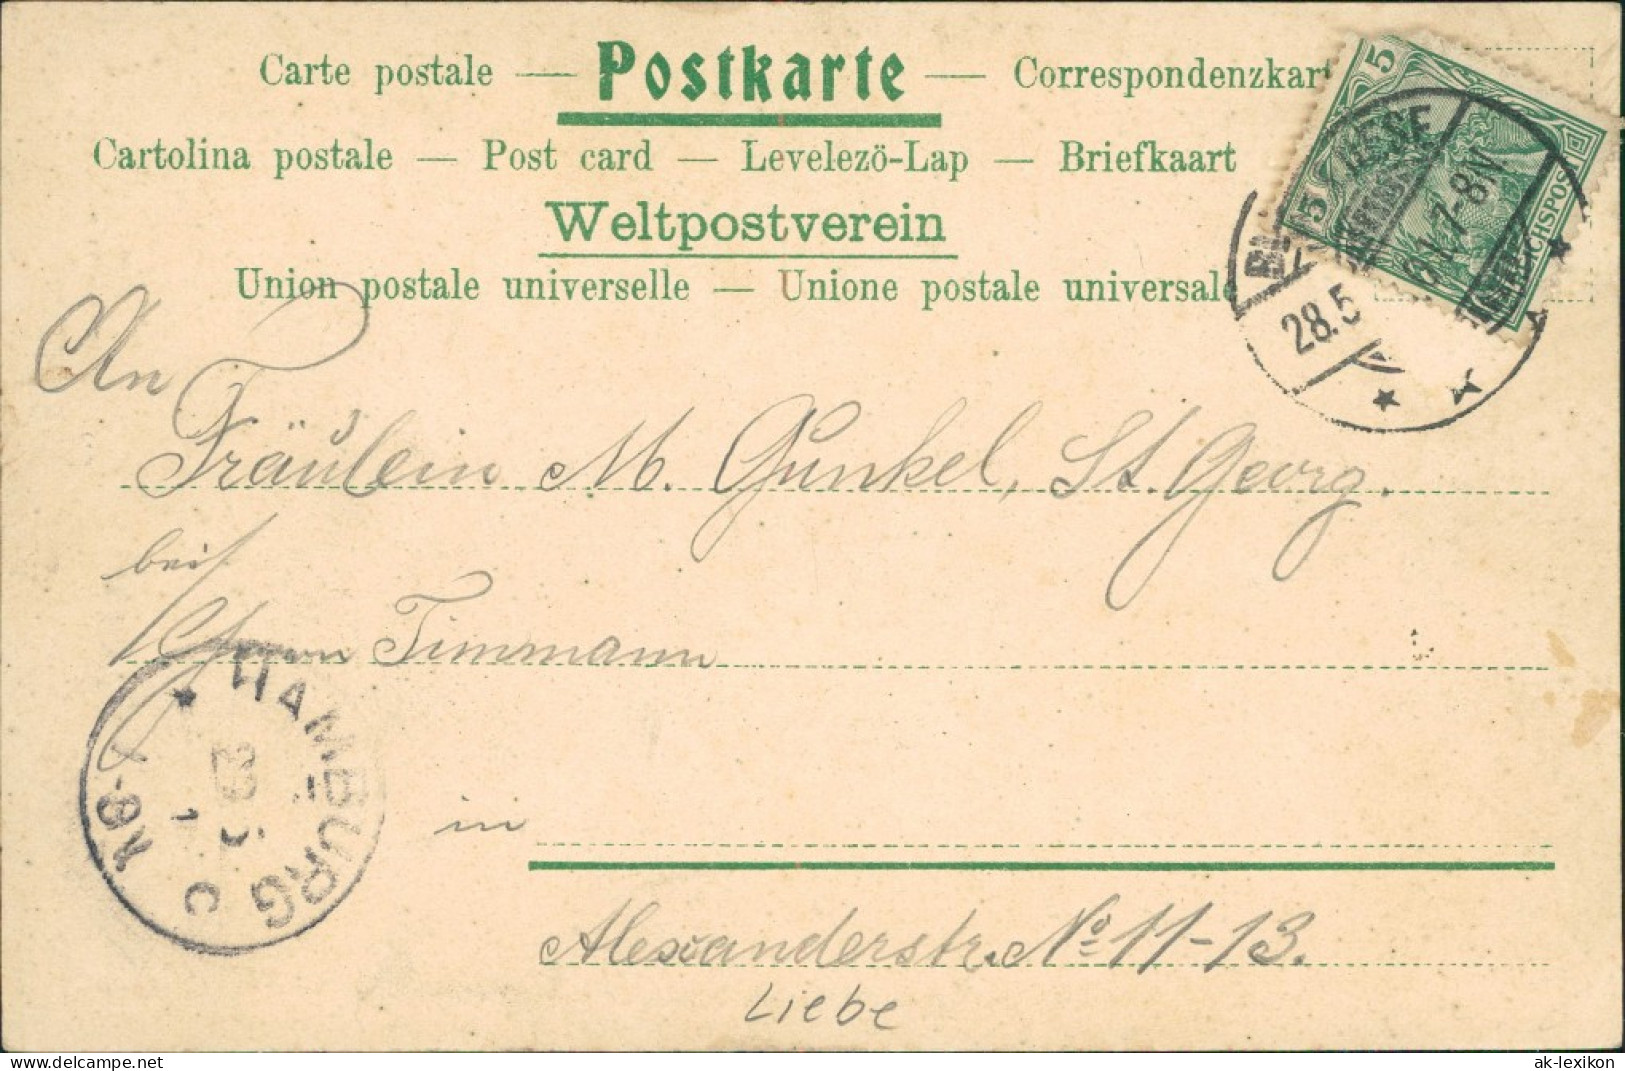 Ansichtskarte  Liebespaar Festkleid Spruch: Die Linde Blühte 1901 - Philosophy